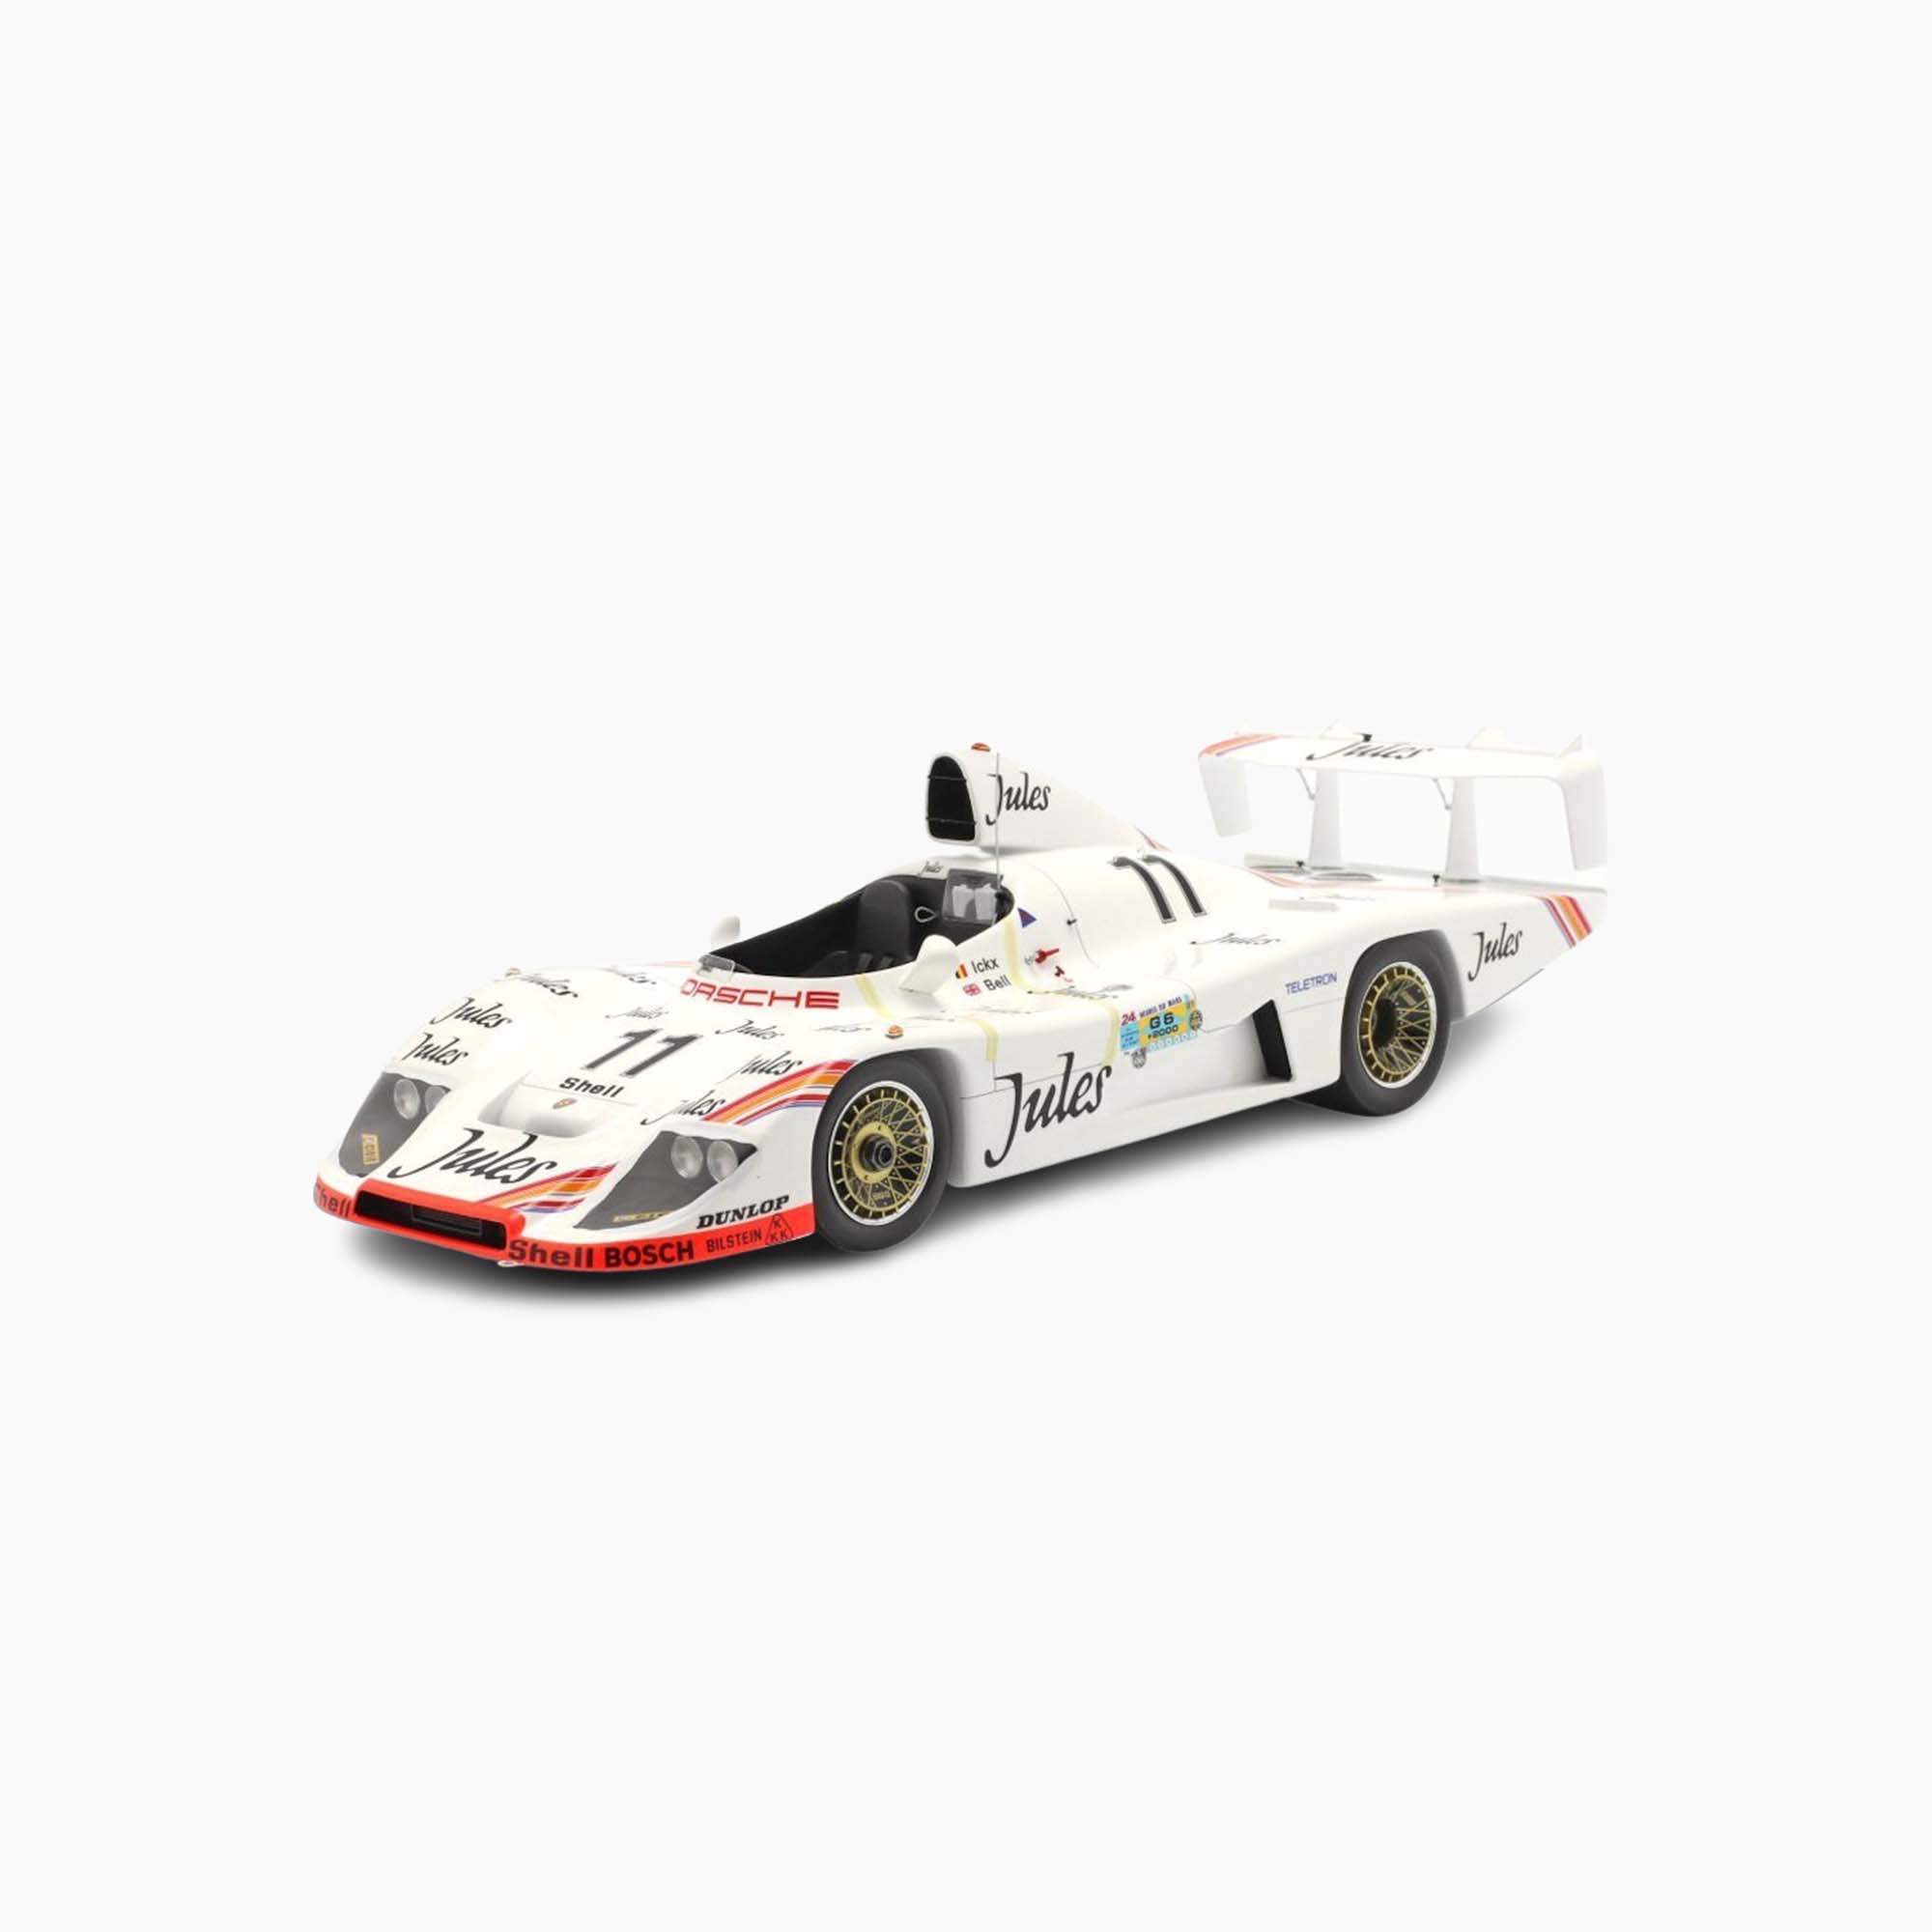 Porsche 936/81 No.11 Winner 24H Le Mans 1981 | 1:18 Scale Model-1:18 Scale Model-Spark Models-gpx-store